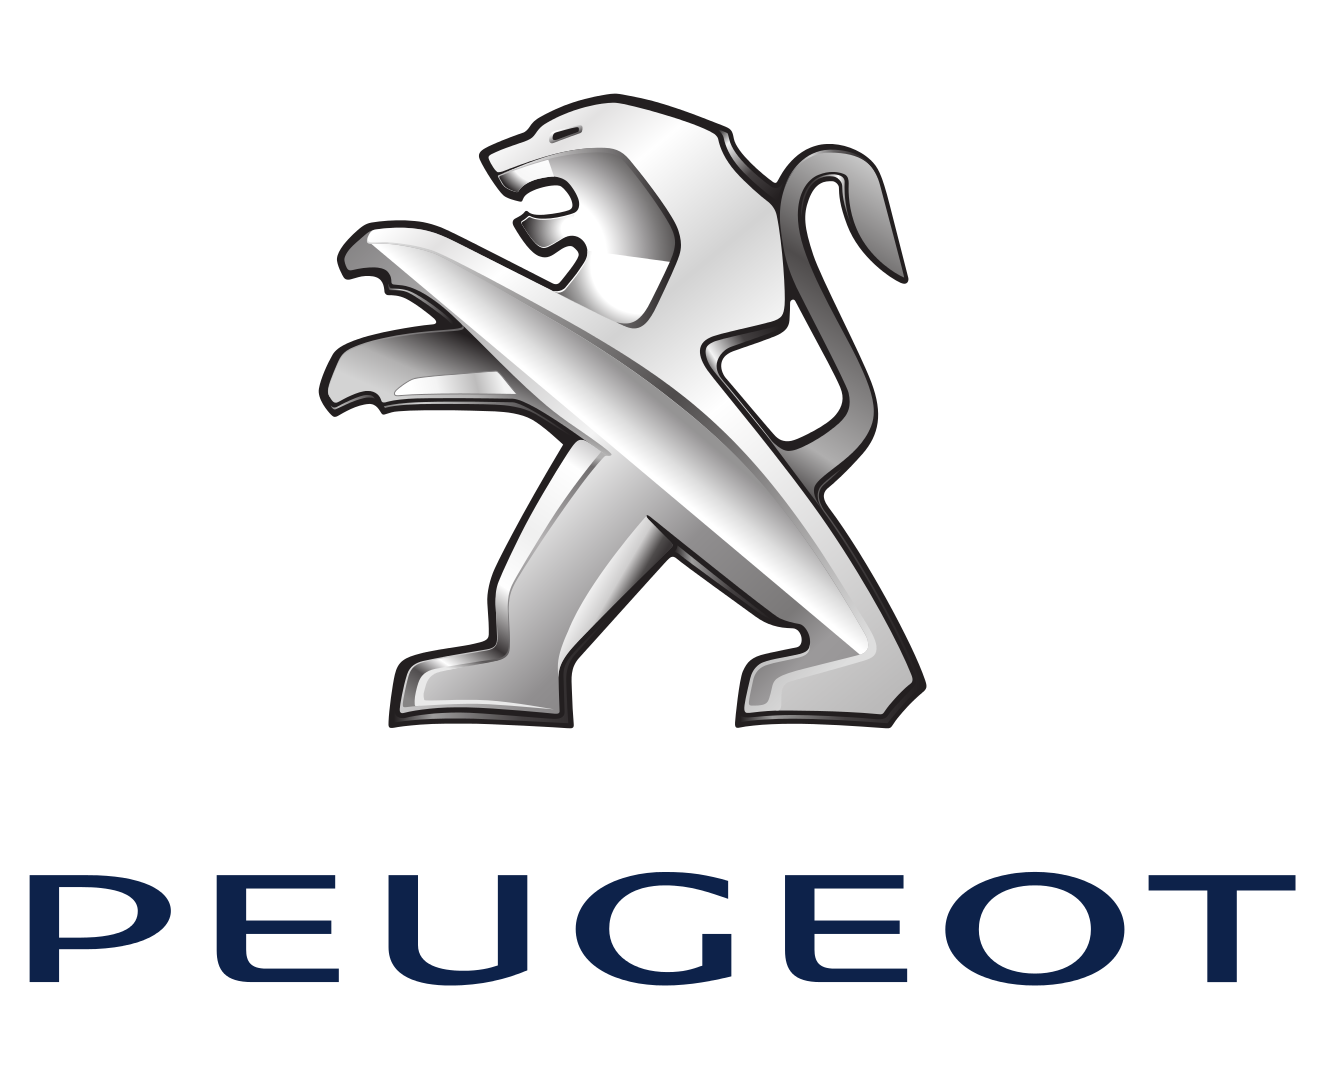 peugeot-logo-2010-1920x1080_cr